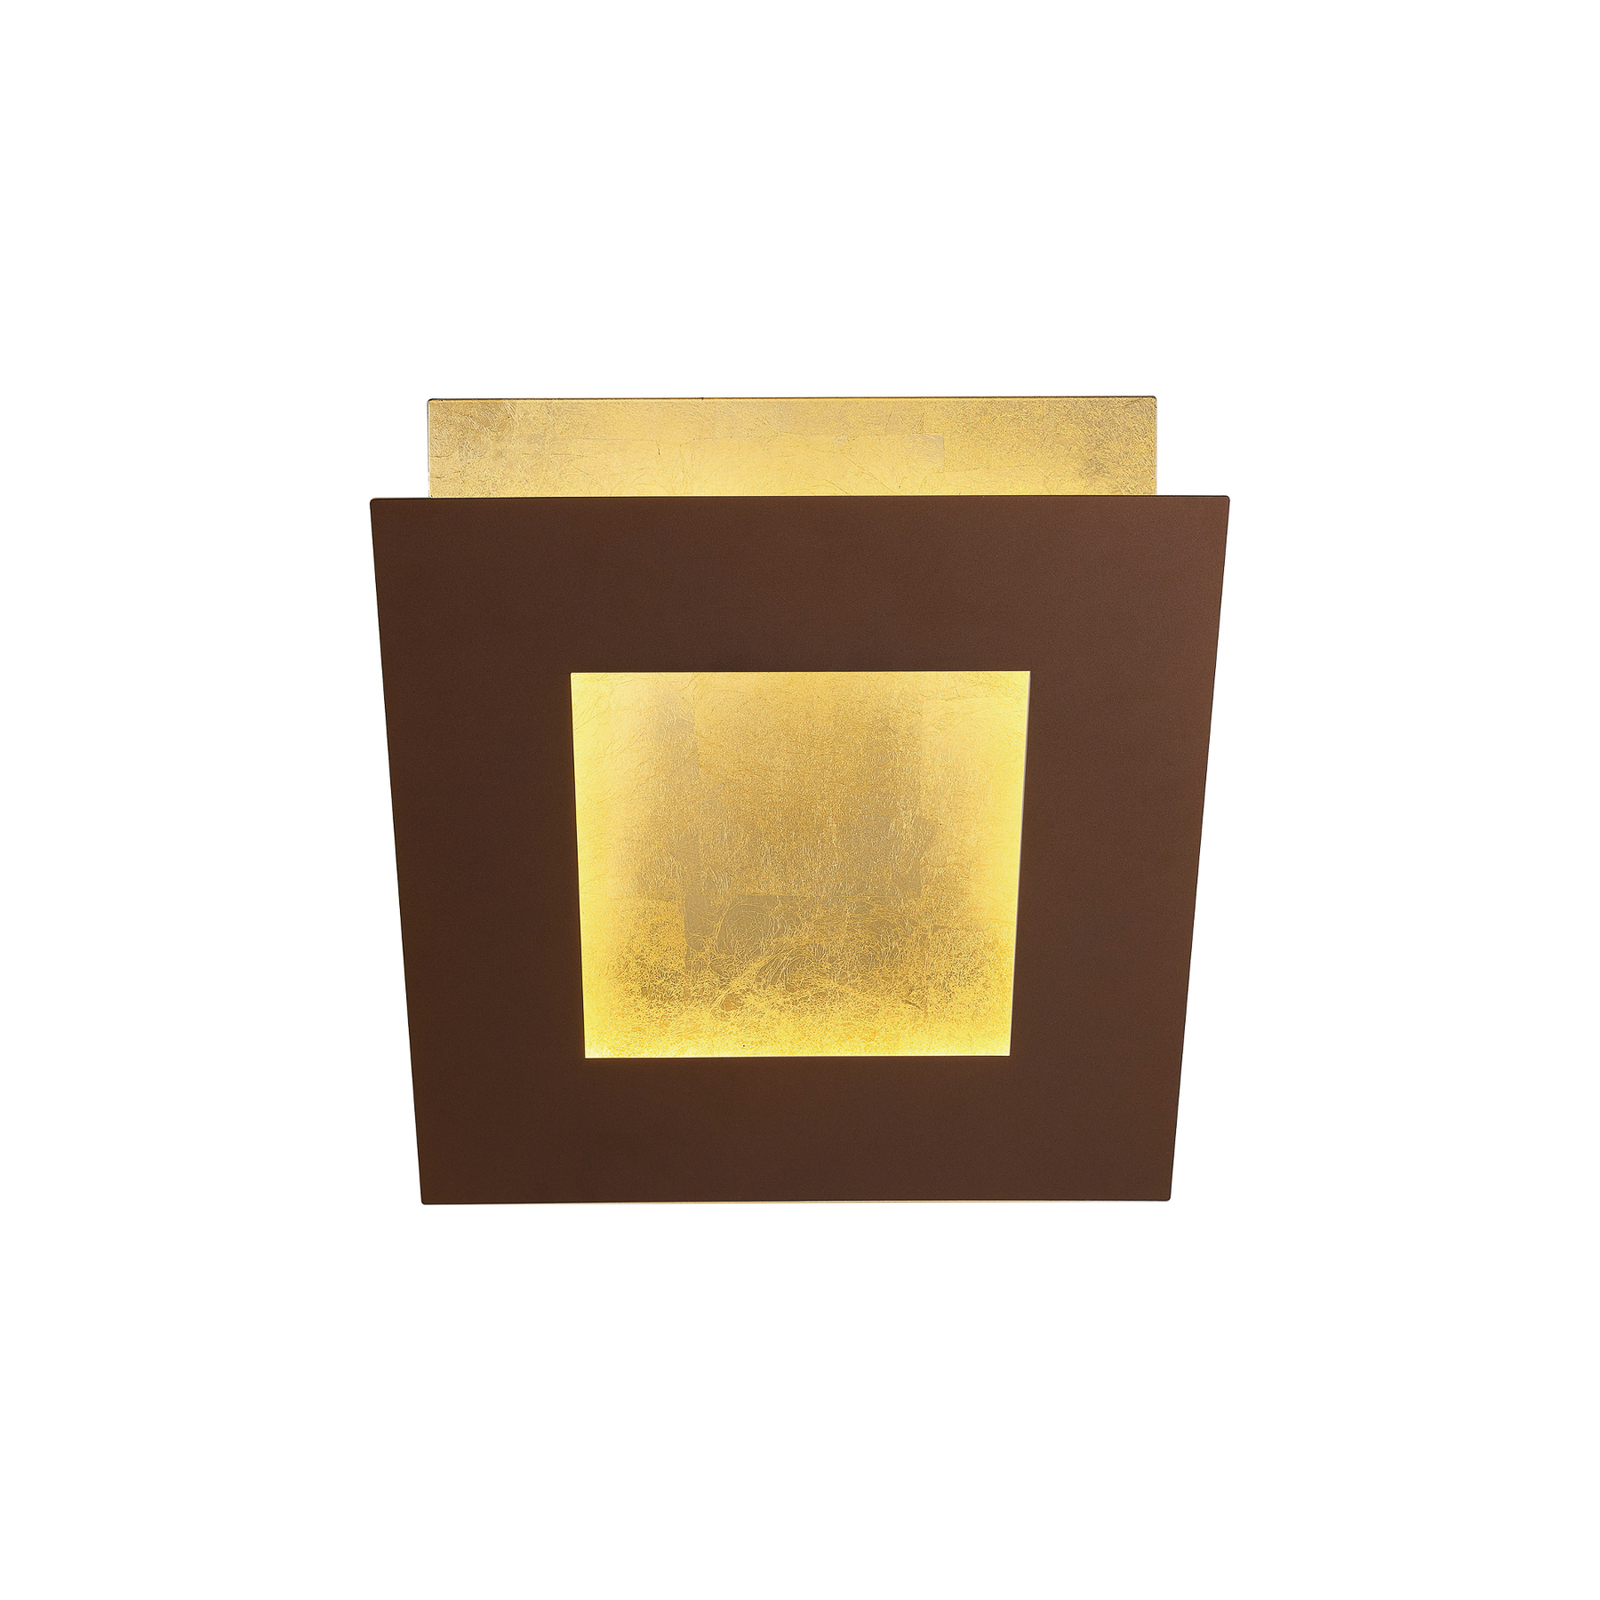 LED-Wandleuchte Dalia, corten/gold, 22 x 22 cm, Aluminium